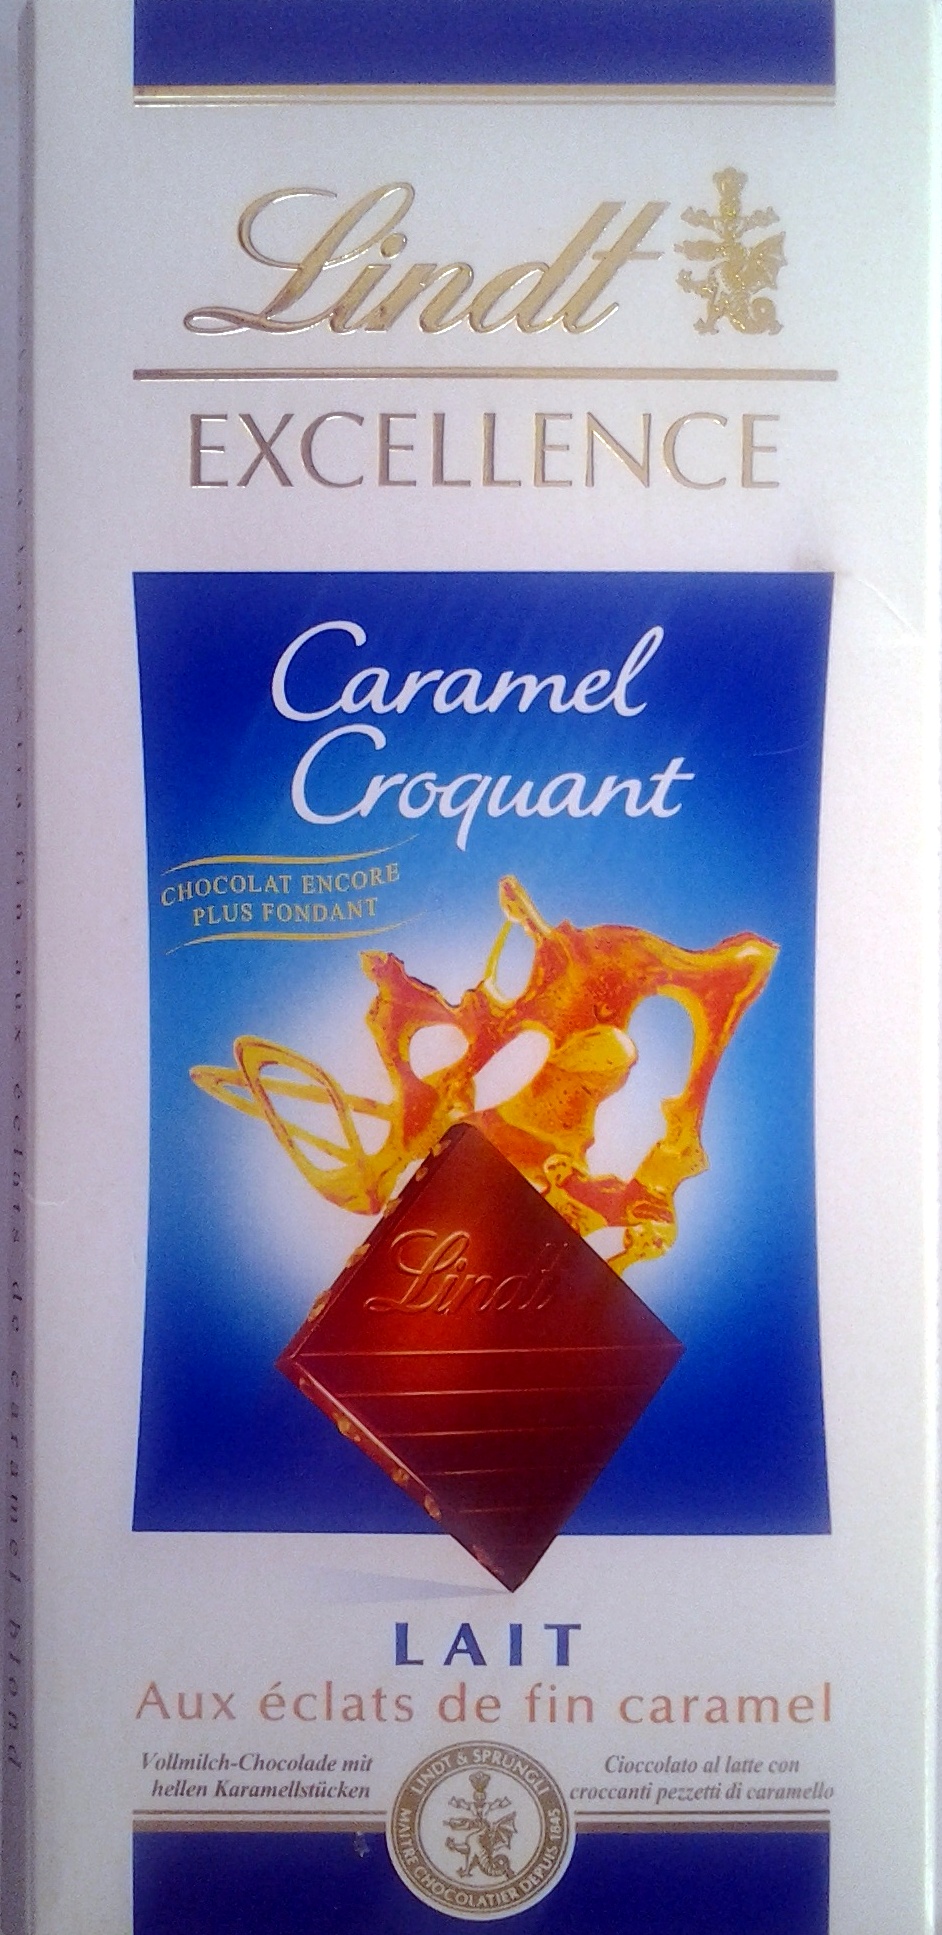 Excellence - Caramel croquant, lait aux éclats de fin caramel - Prodotto - fr